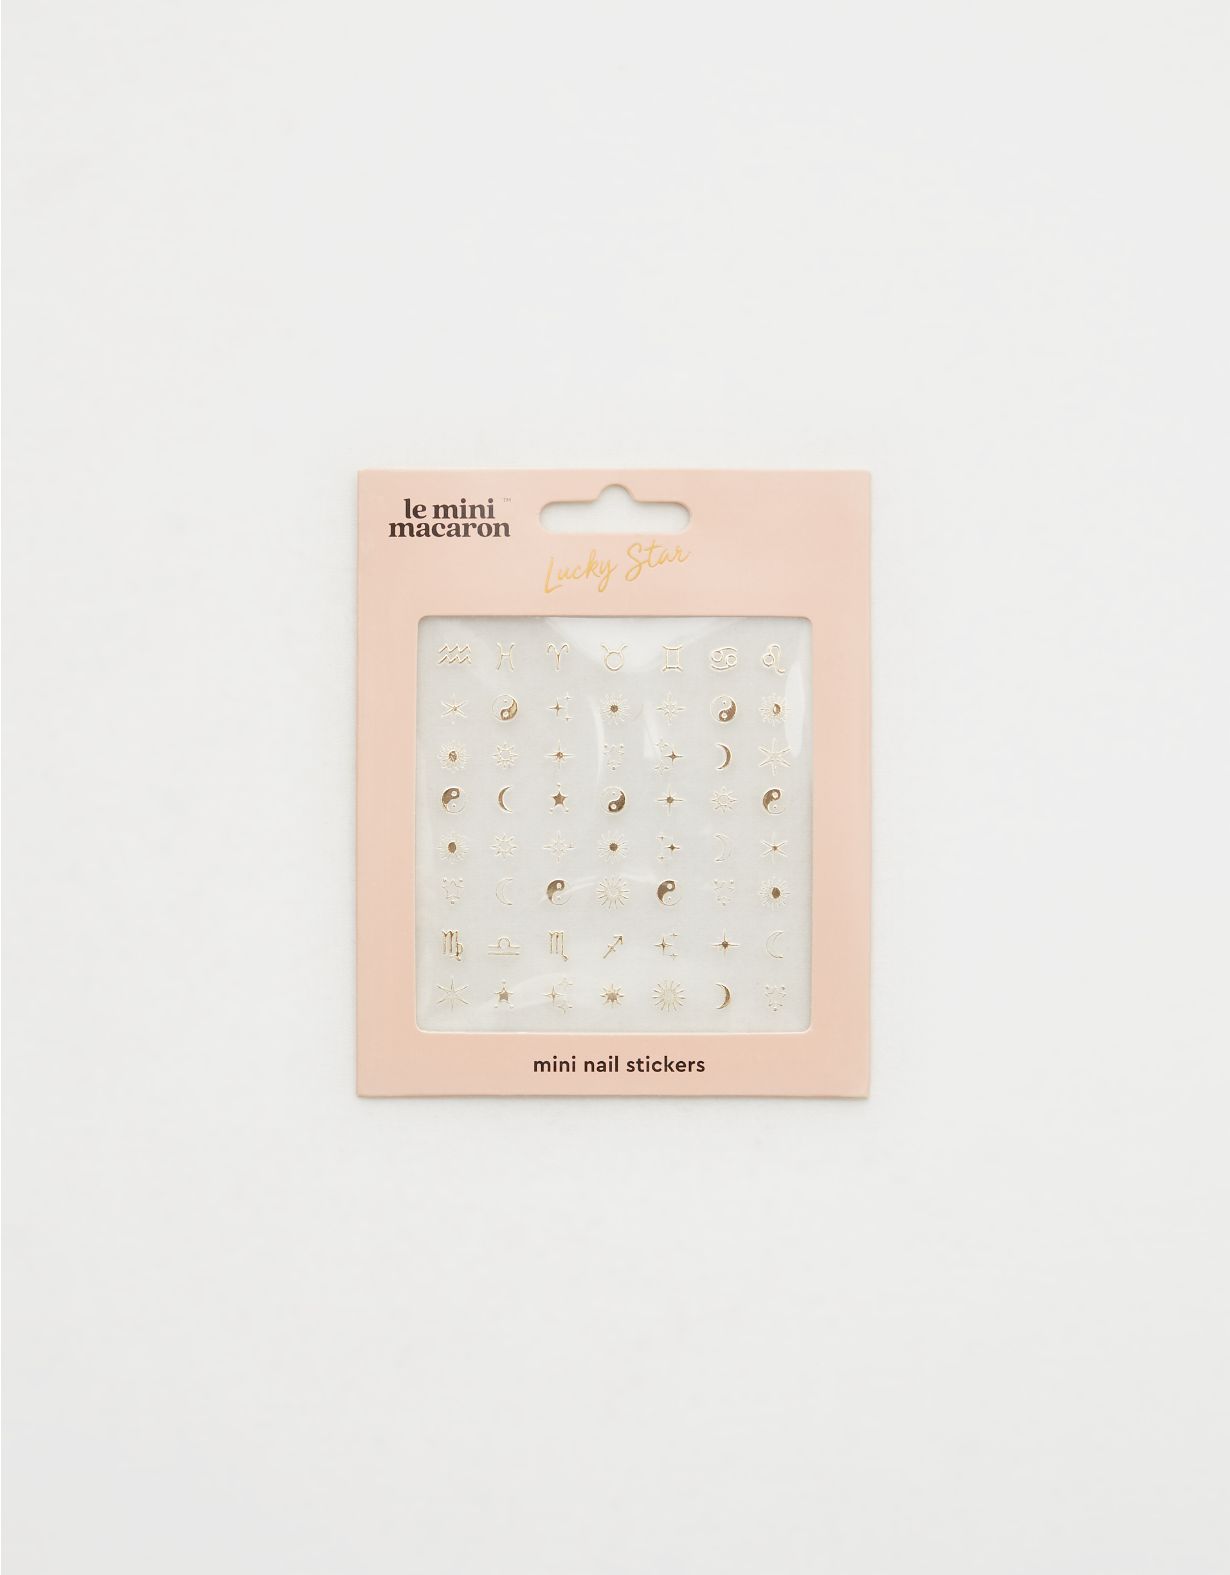 Le Mini Macaron Lucky Star Zodiac Mini Nail Stickers